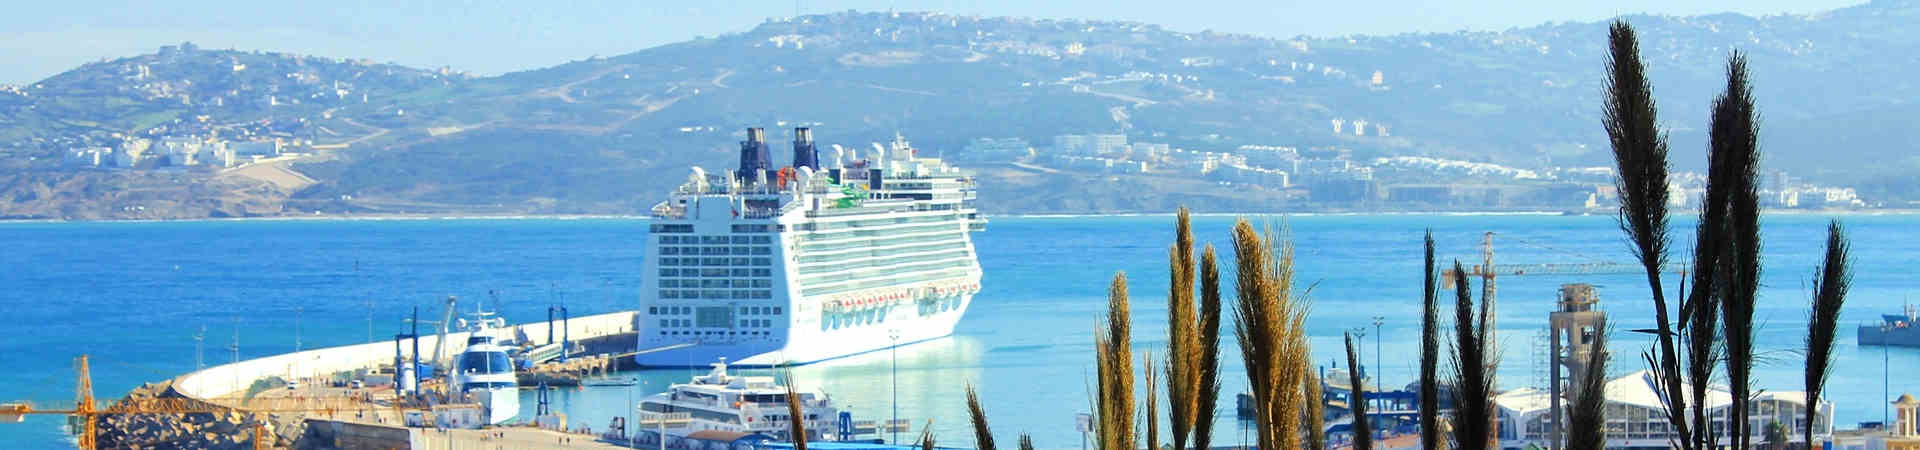 Imatge recurs del port de destinació Tànger Med per a la ruta en ferry Sete - Tànger Med